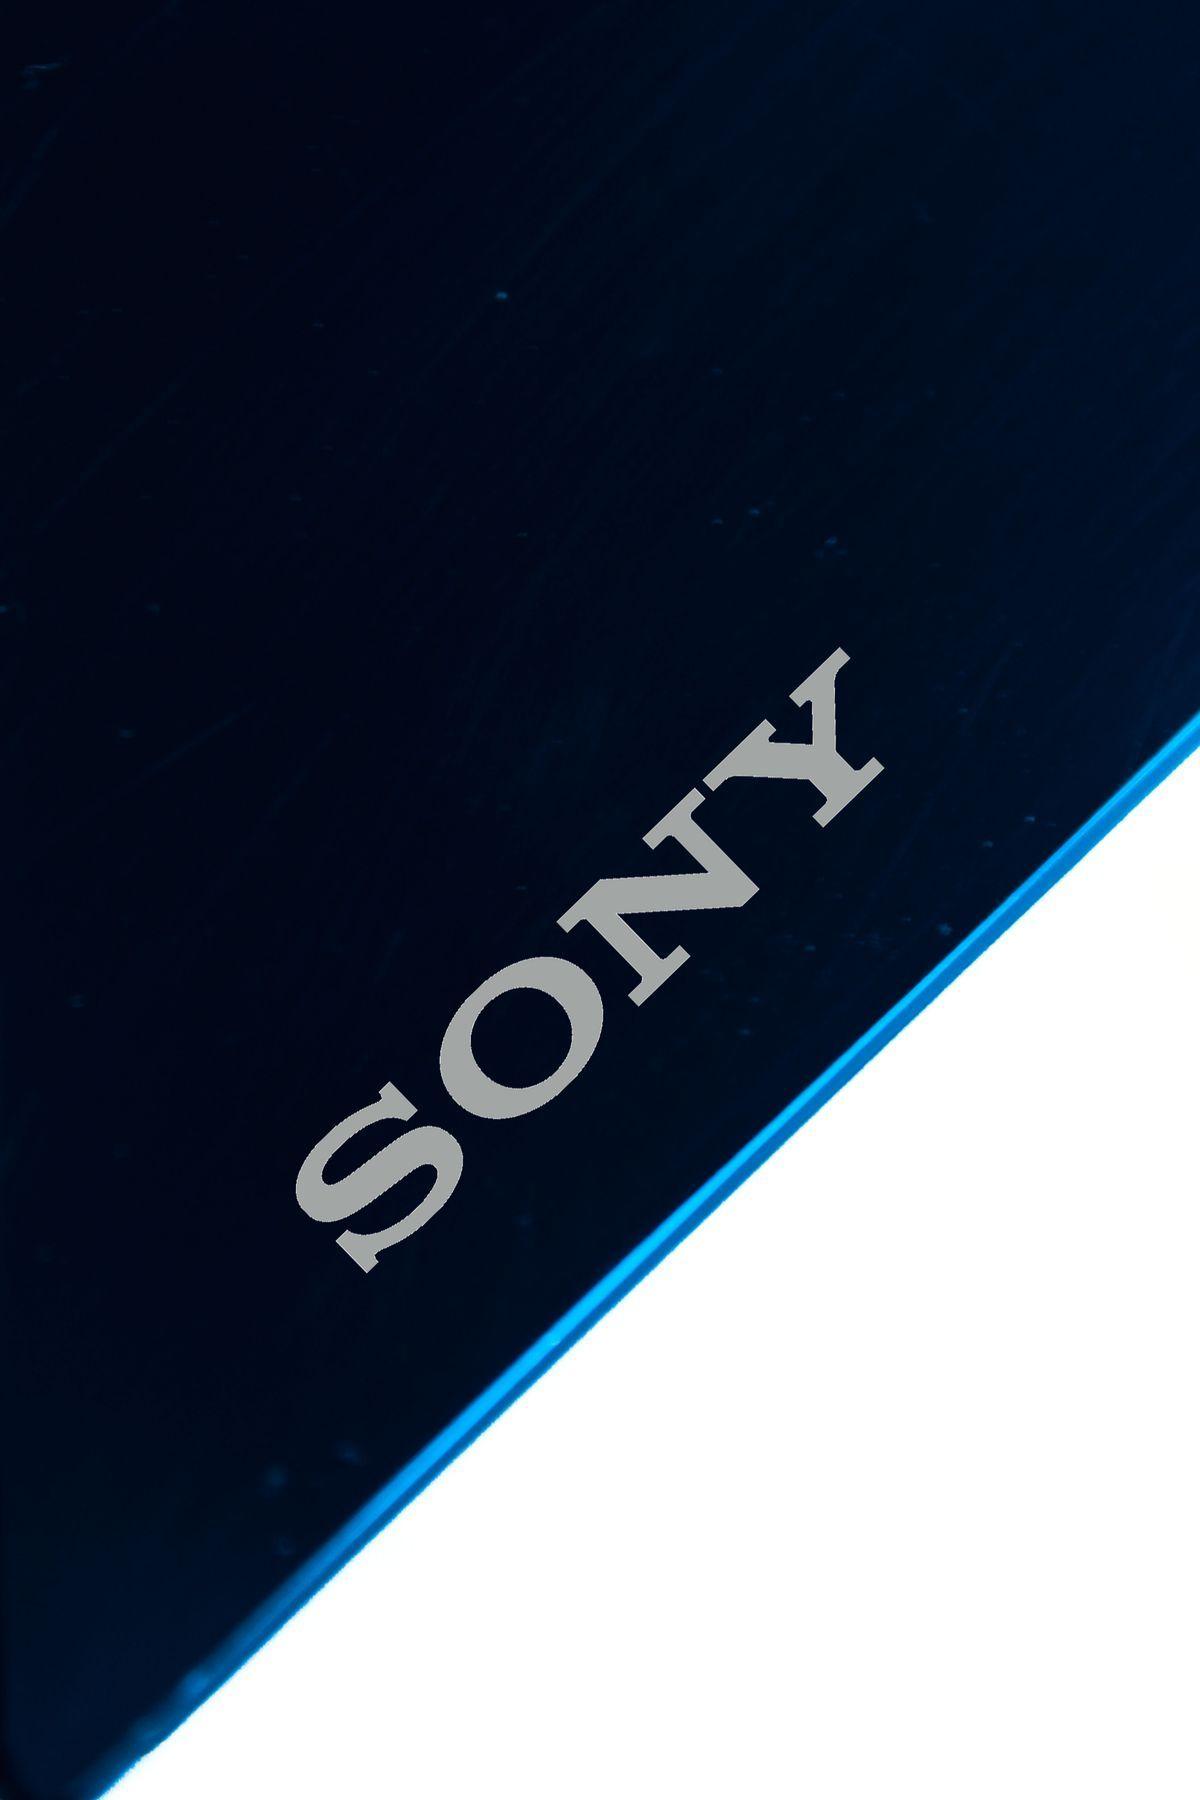 Sony HD wallpapers  Pxfuel